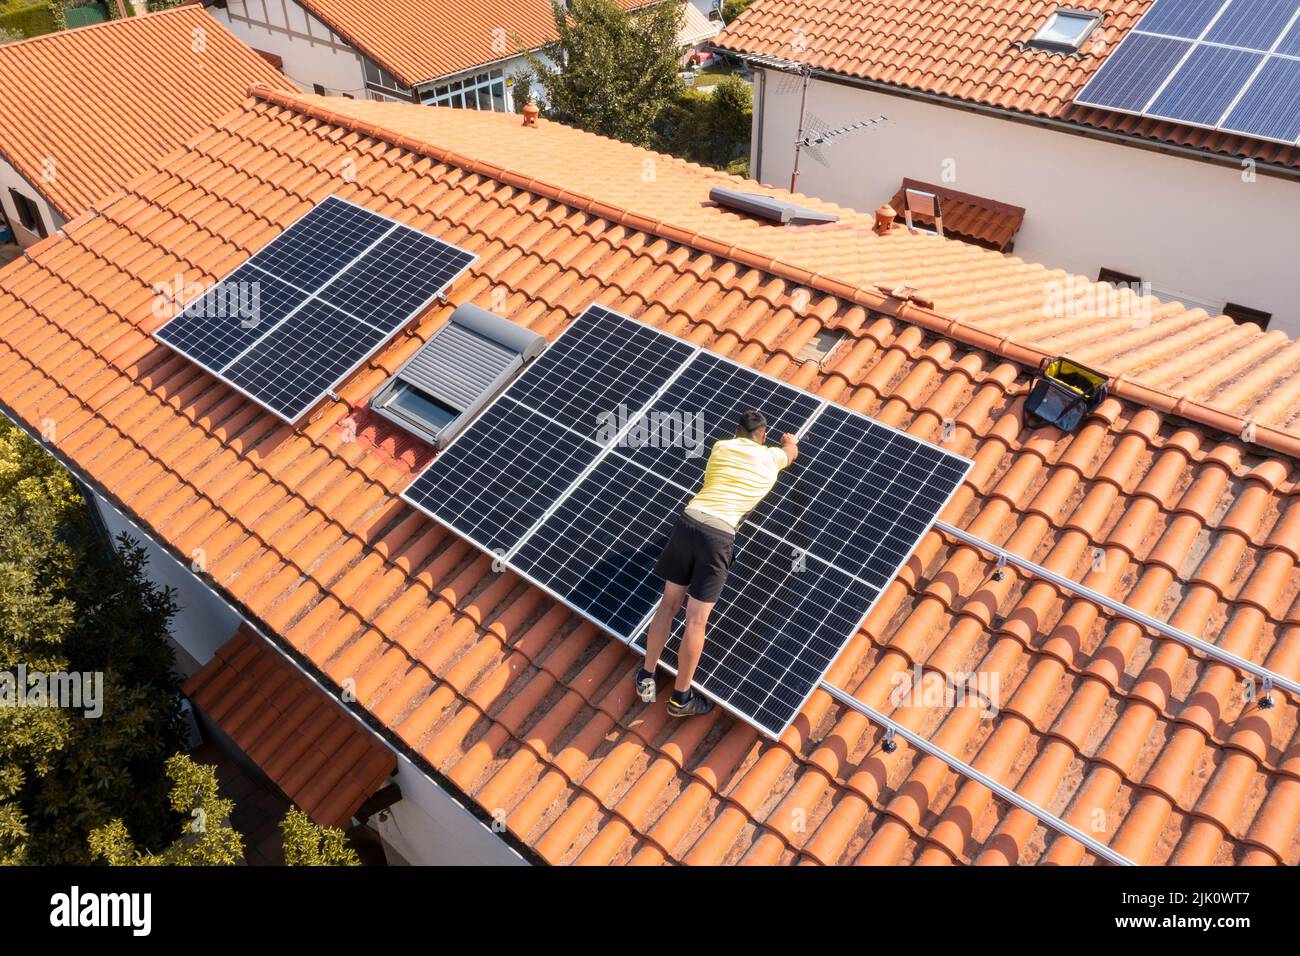 Travailleur installant des panneaux solaires sur un toit. Vue de drone. 4K. Navarre, Espagne, Europe. Concepts d'environnement et de technologie. Banque D'Images